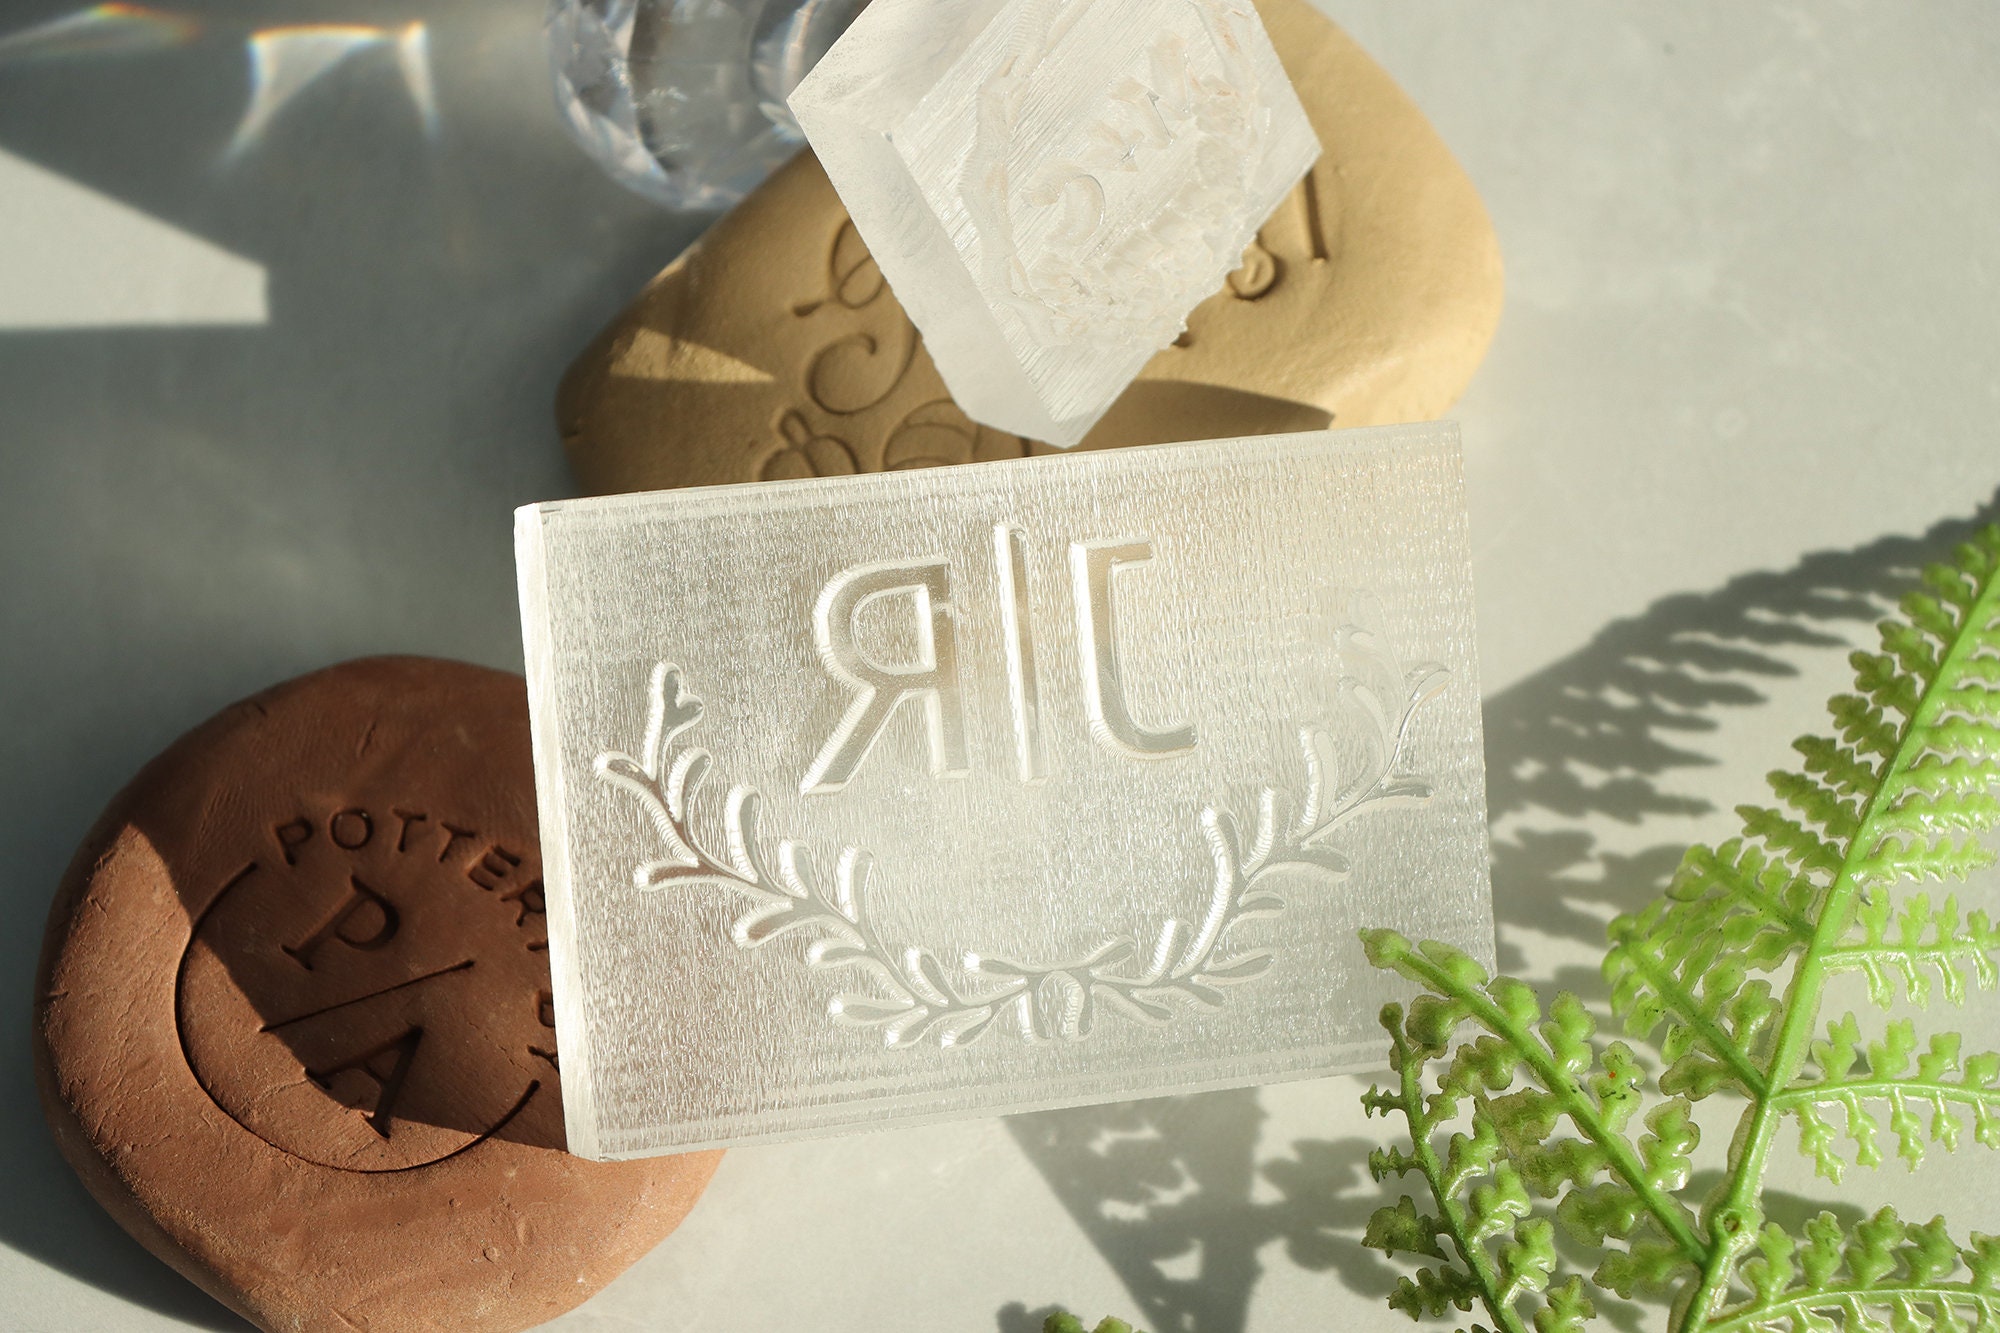 Custom Made Soap Mold Soap Soap Stamp Logo Embosser Handmade